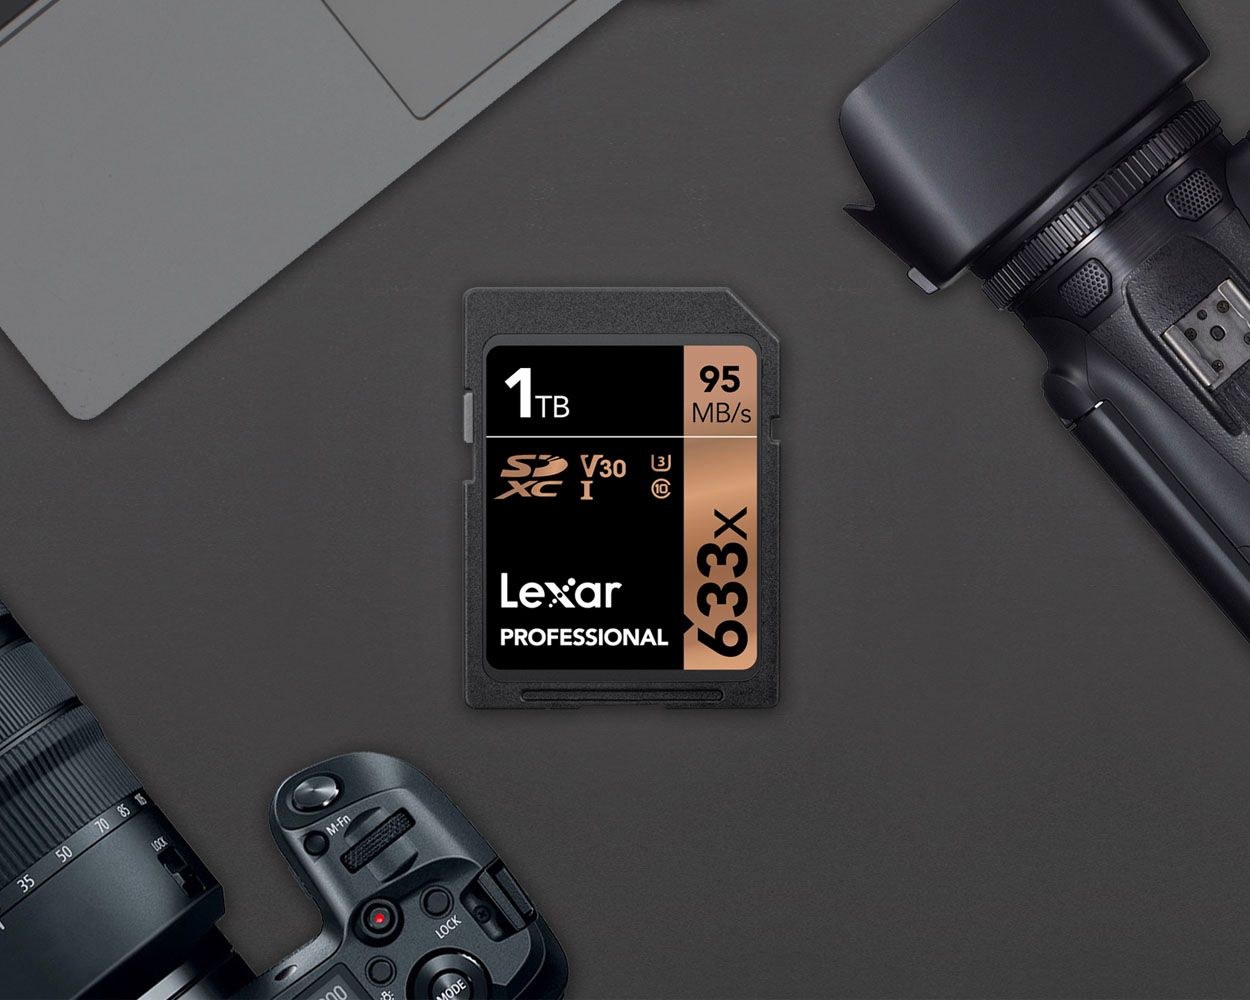 Lexar เปิดตัว SDXC Card ความจุ 1TB รุ่นแรกของโลก พร้อมวางขายจริง สามารถหาซื้อกันได้ซะที